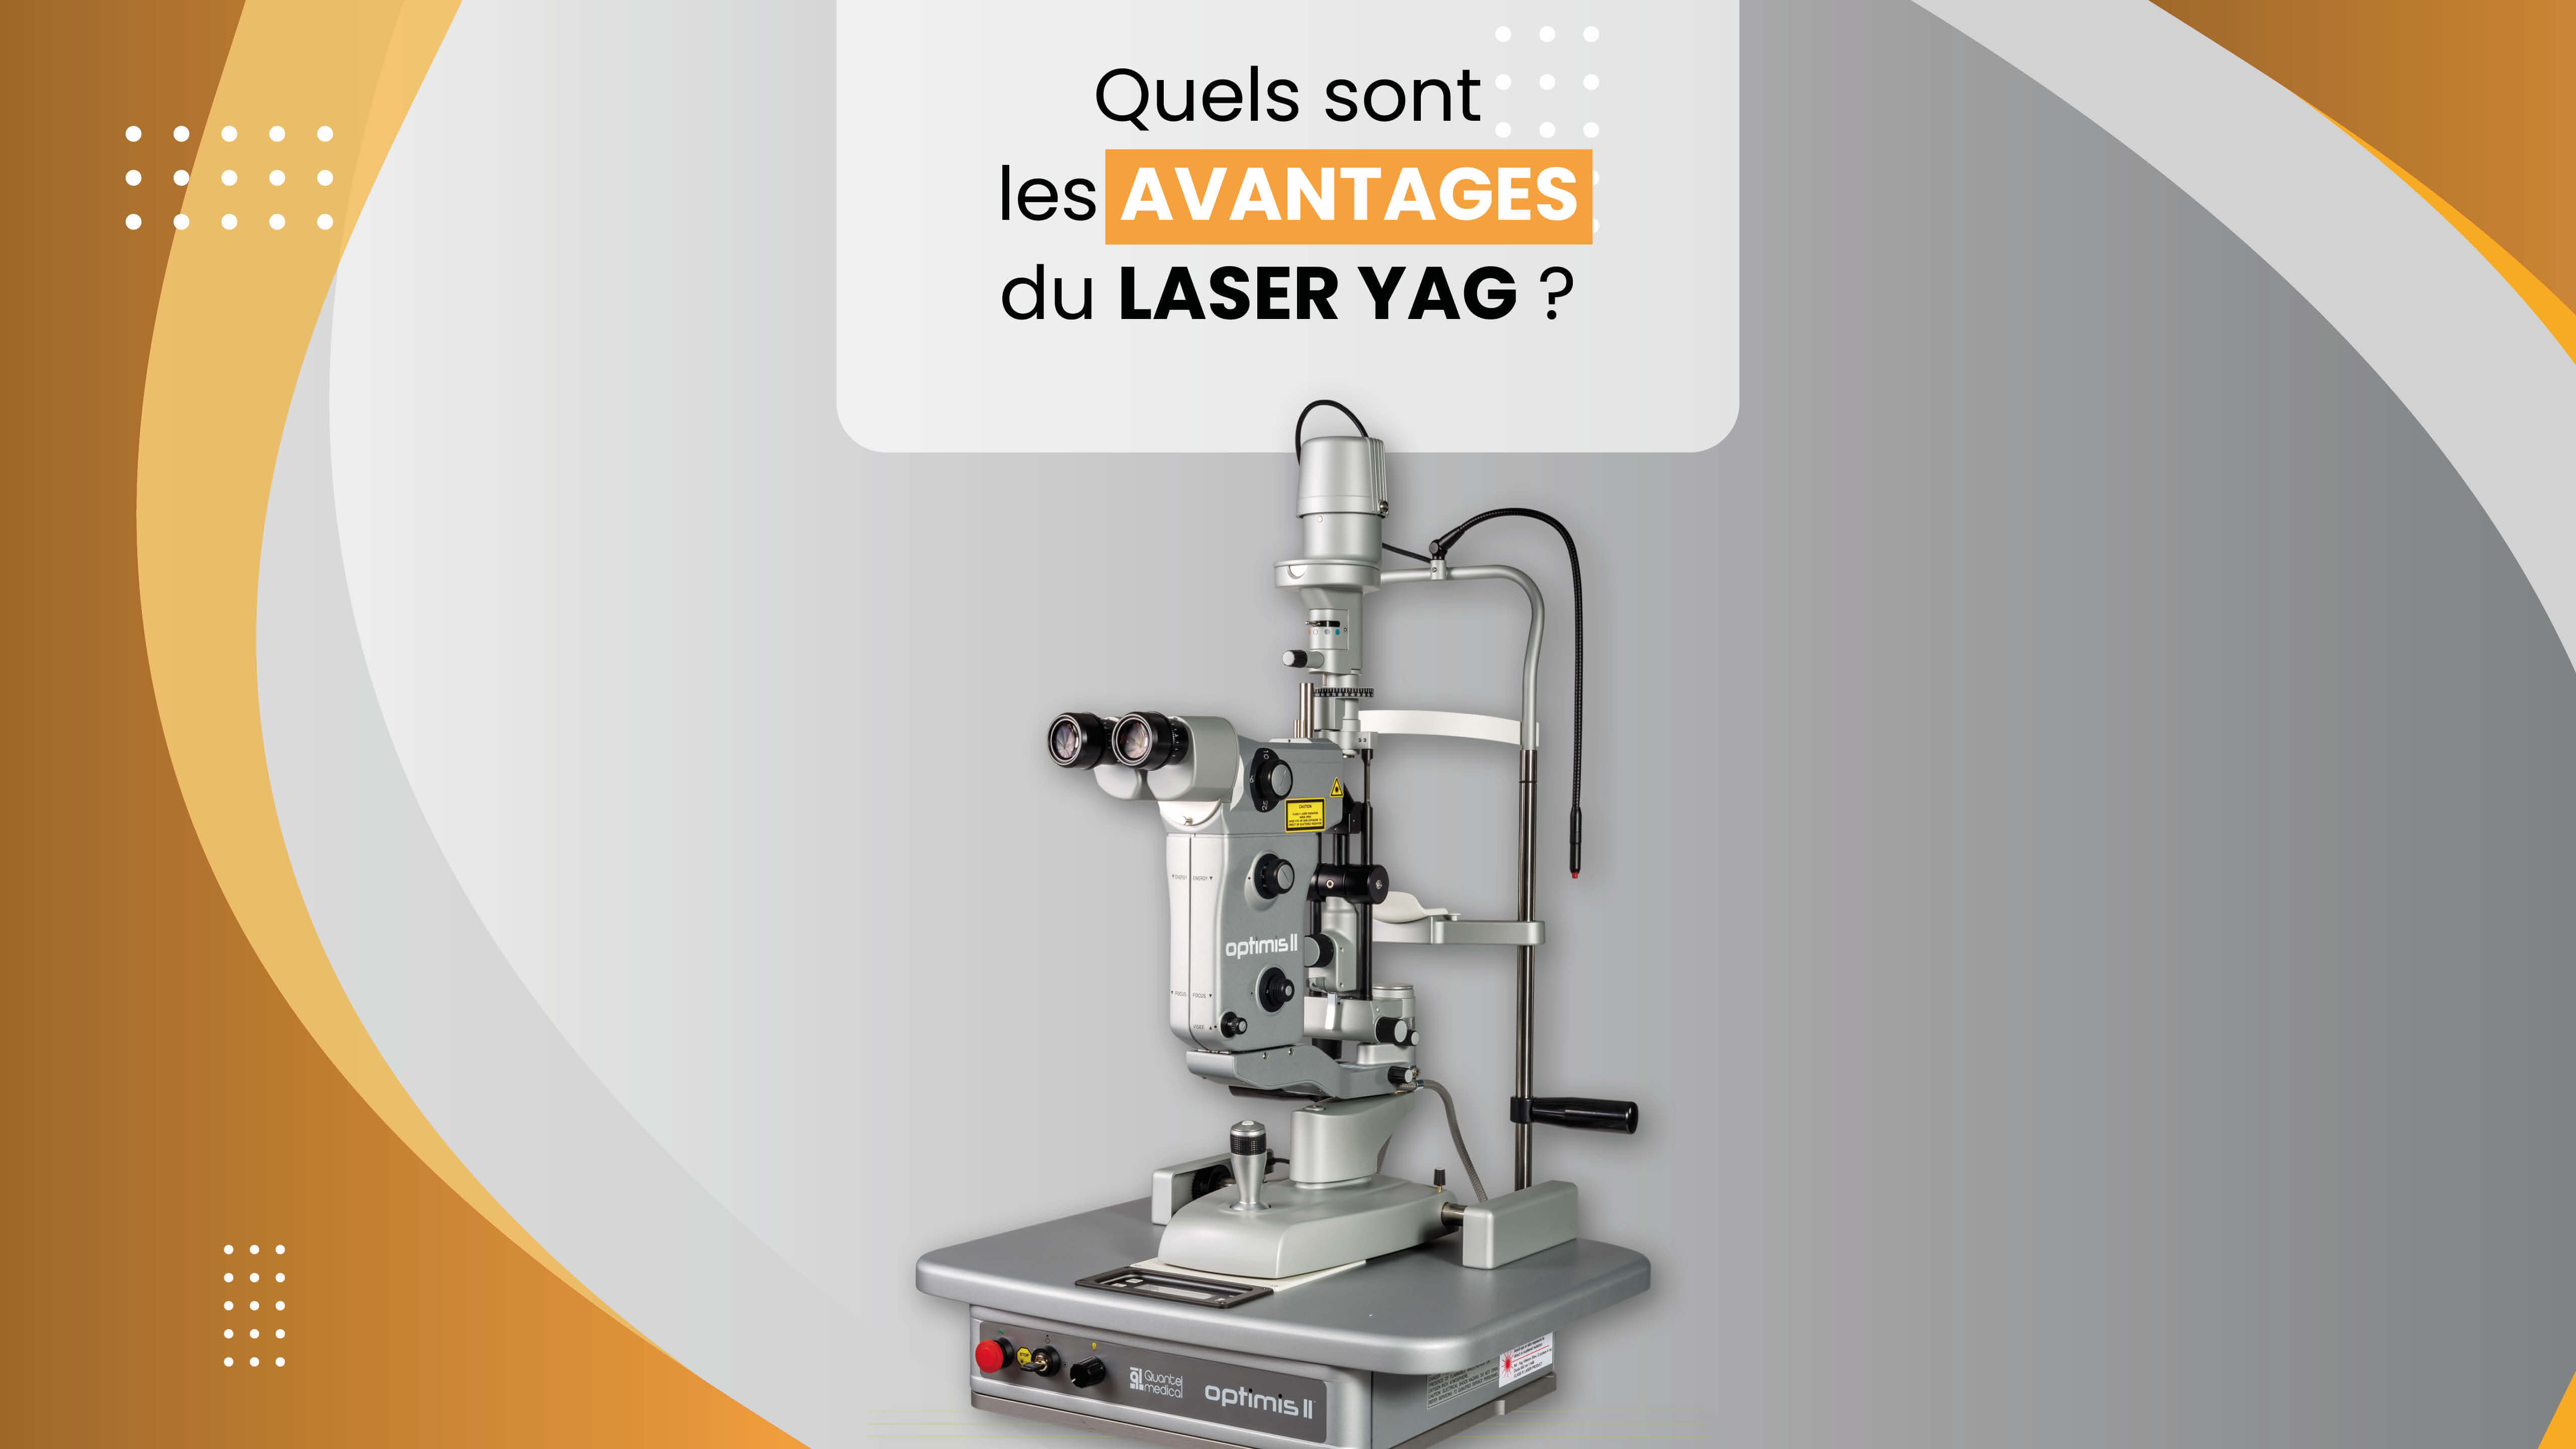 Les avantages du Laser YAG